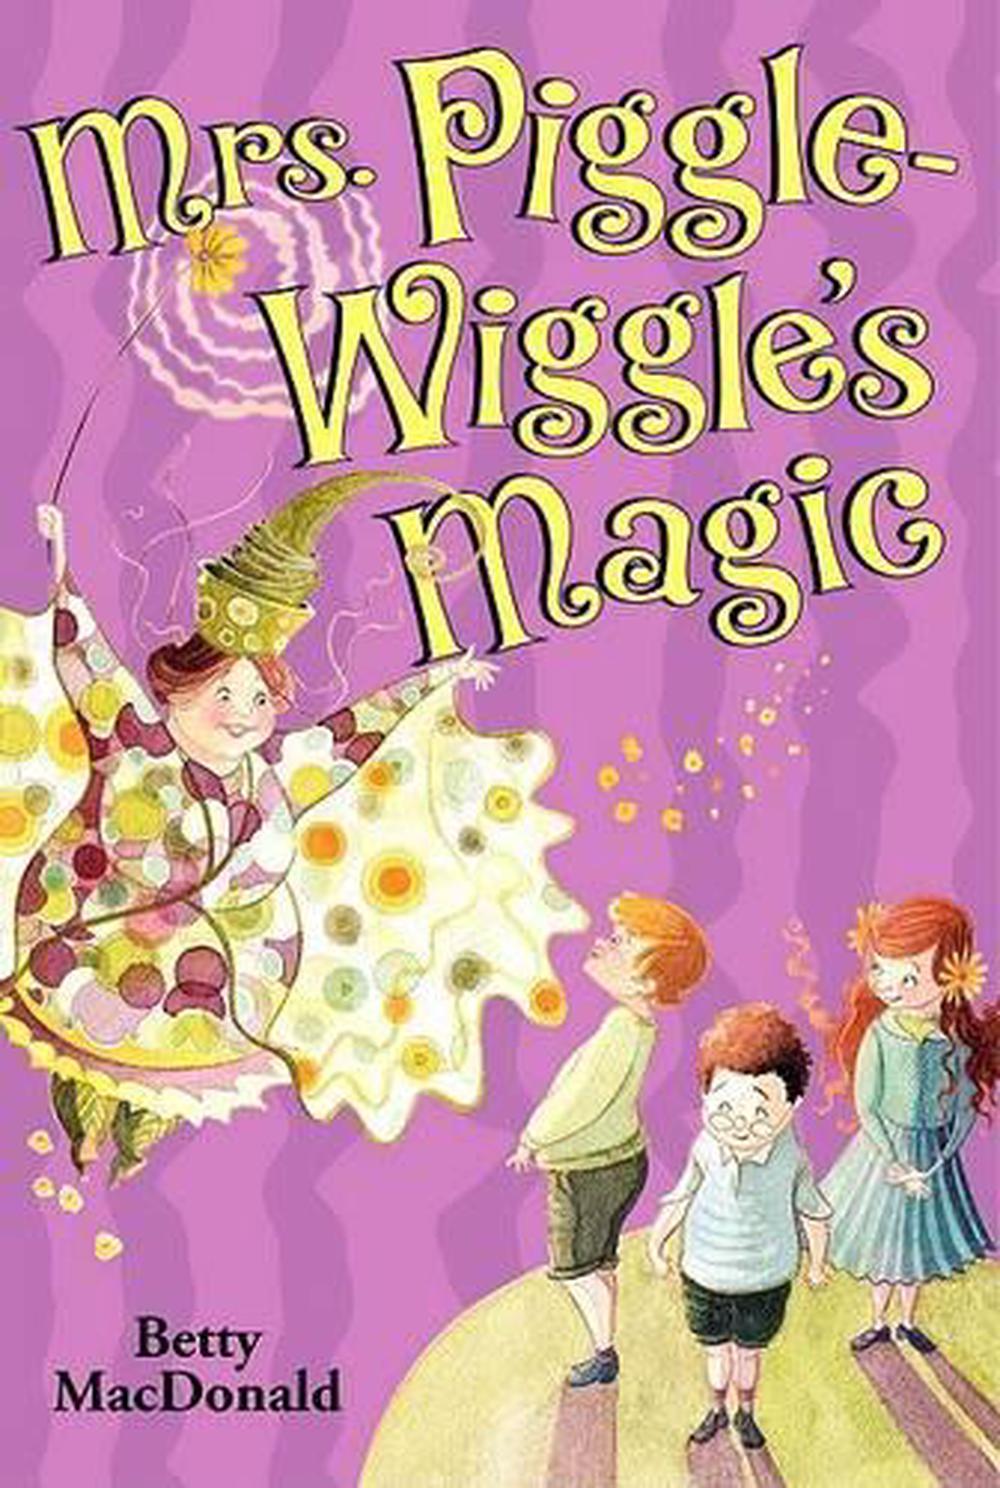 Mrs. Piggle Wiggle by Betty MacDonald